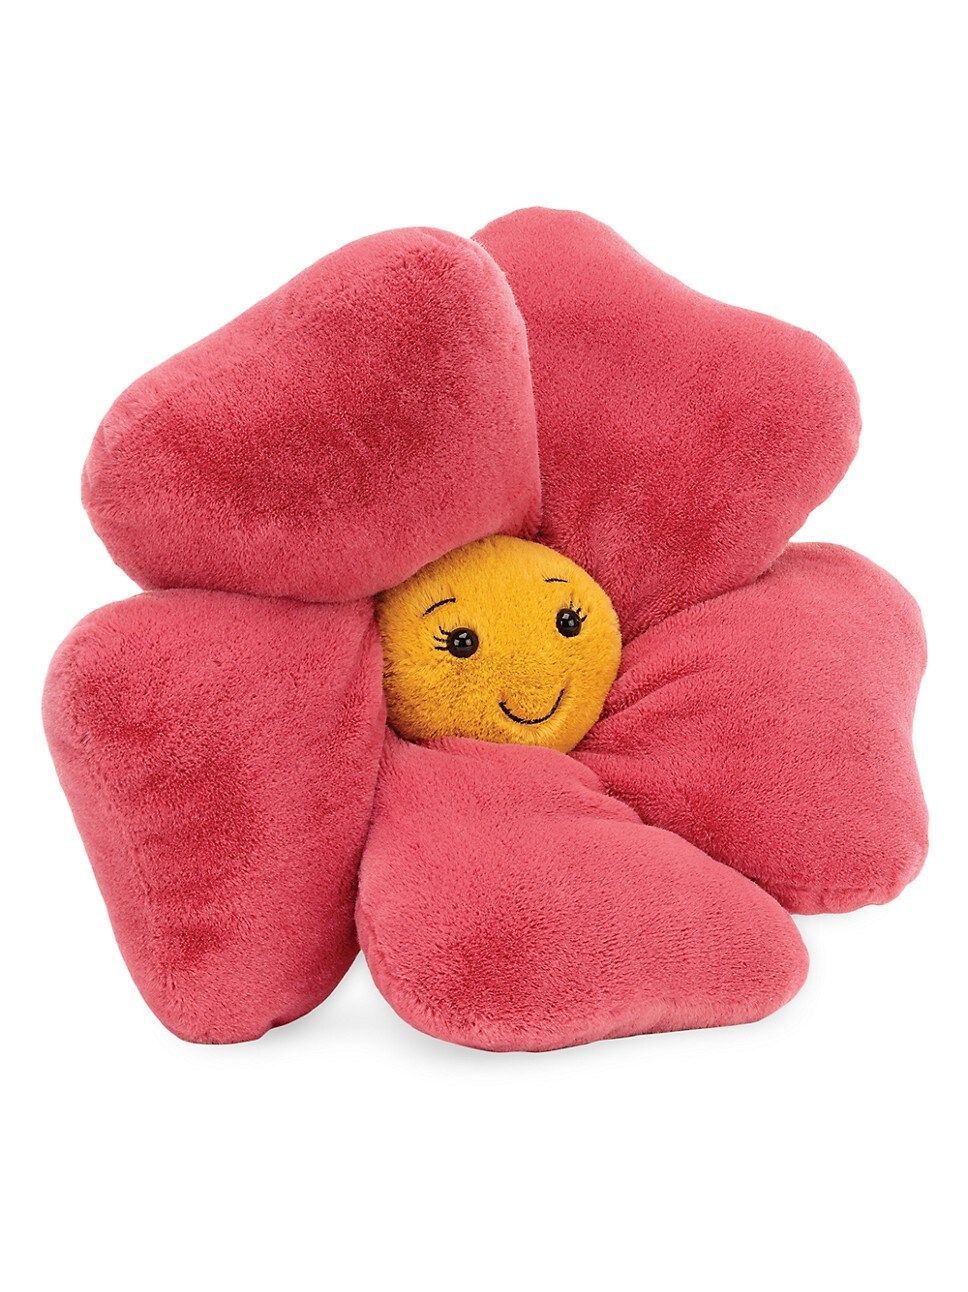 Fluery Petunia Plush Toy | Saks Fifth Avenue